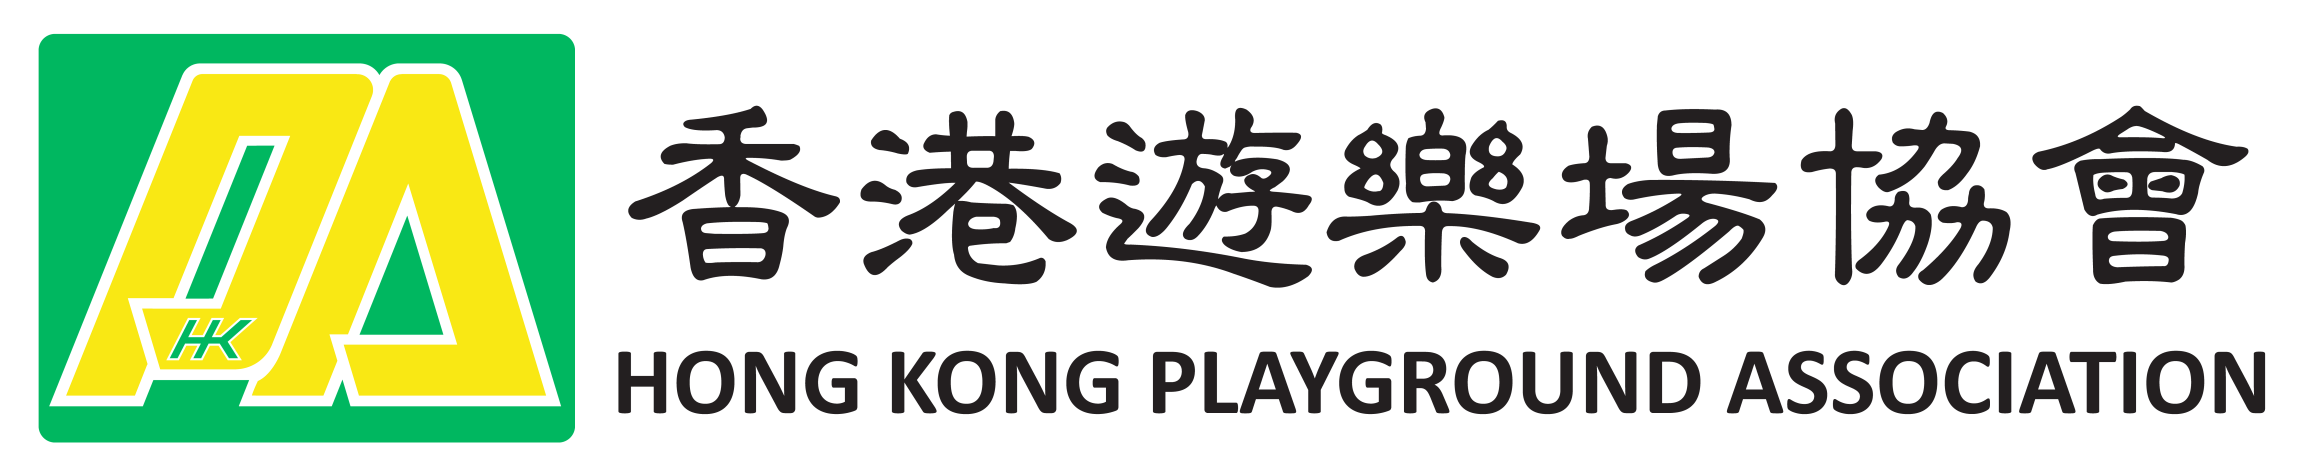 本頁圖片/檔案 - hkpa_logo